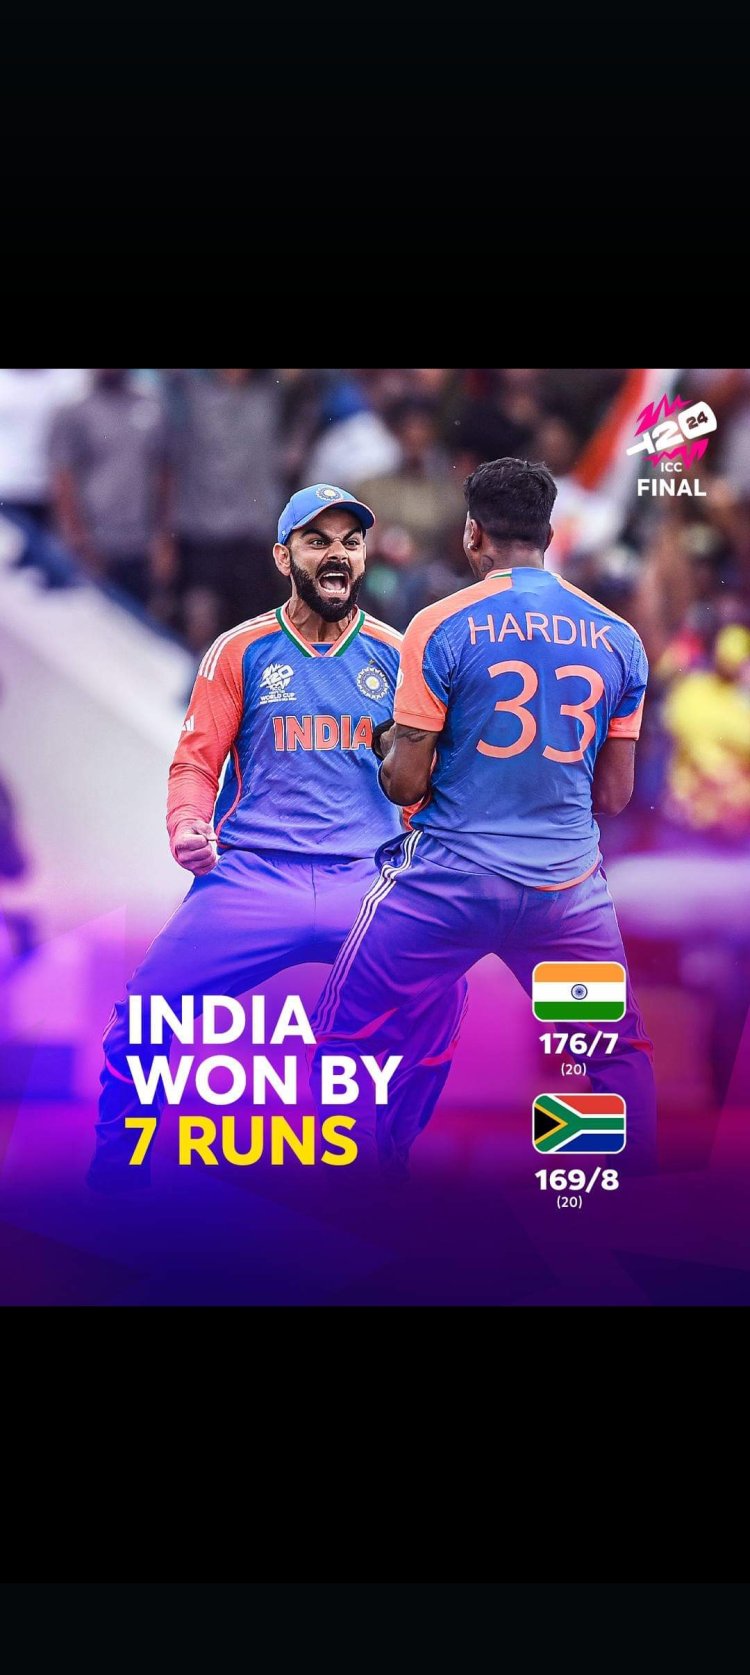 फाइनल में भारत ने दक्षिण अफ्रीका को 7 रन से हराया